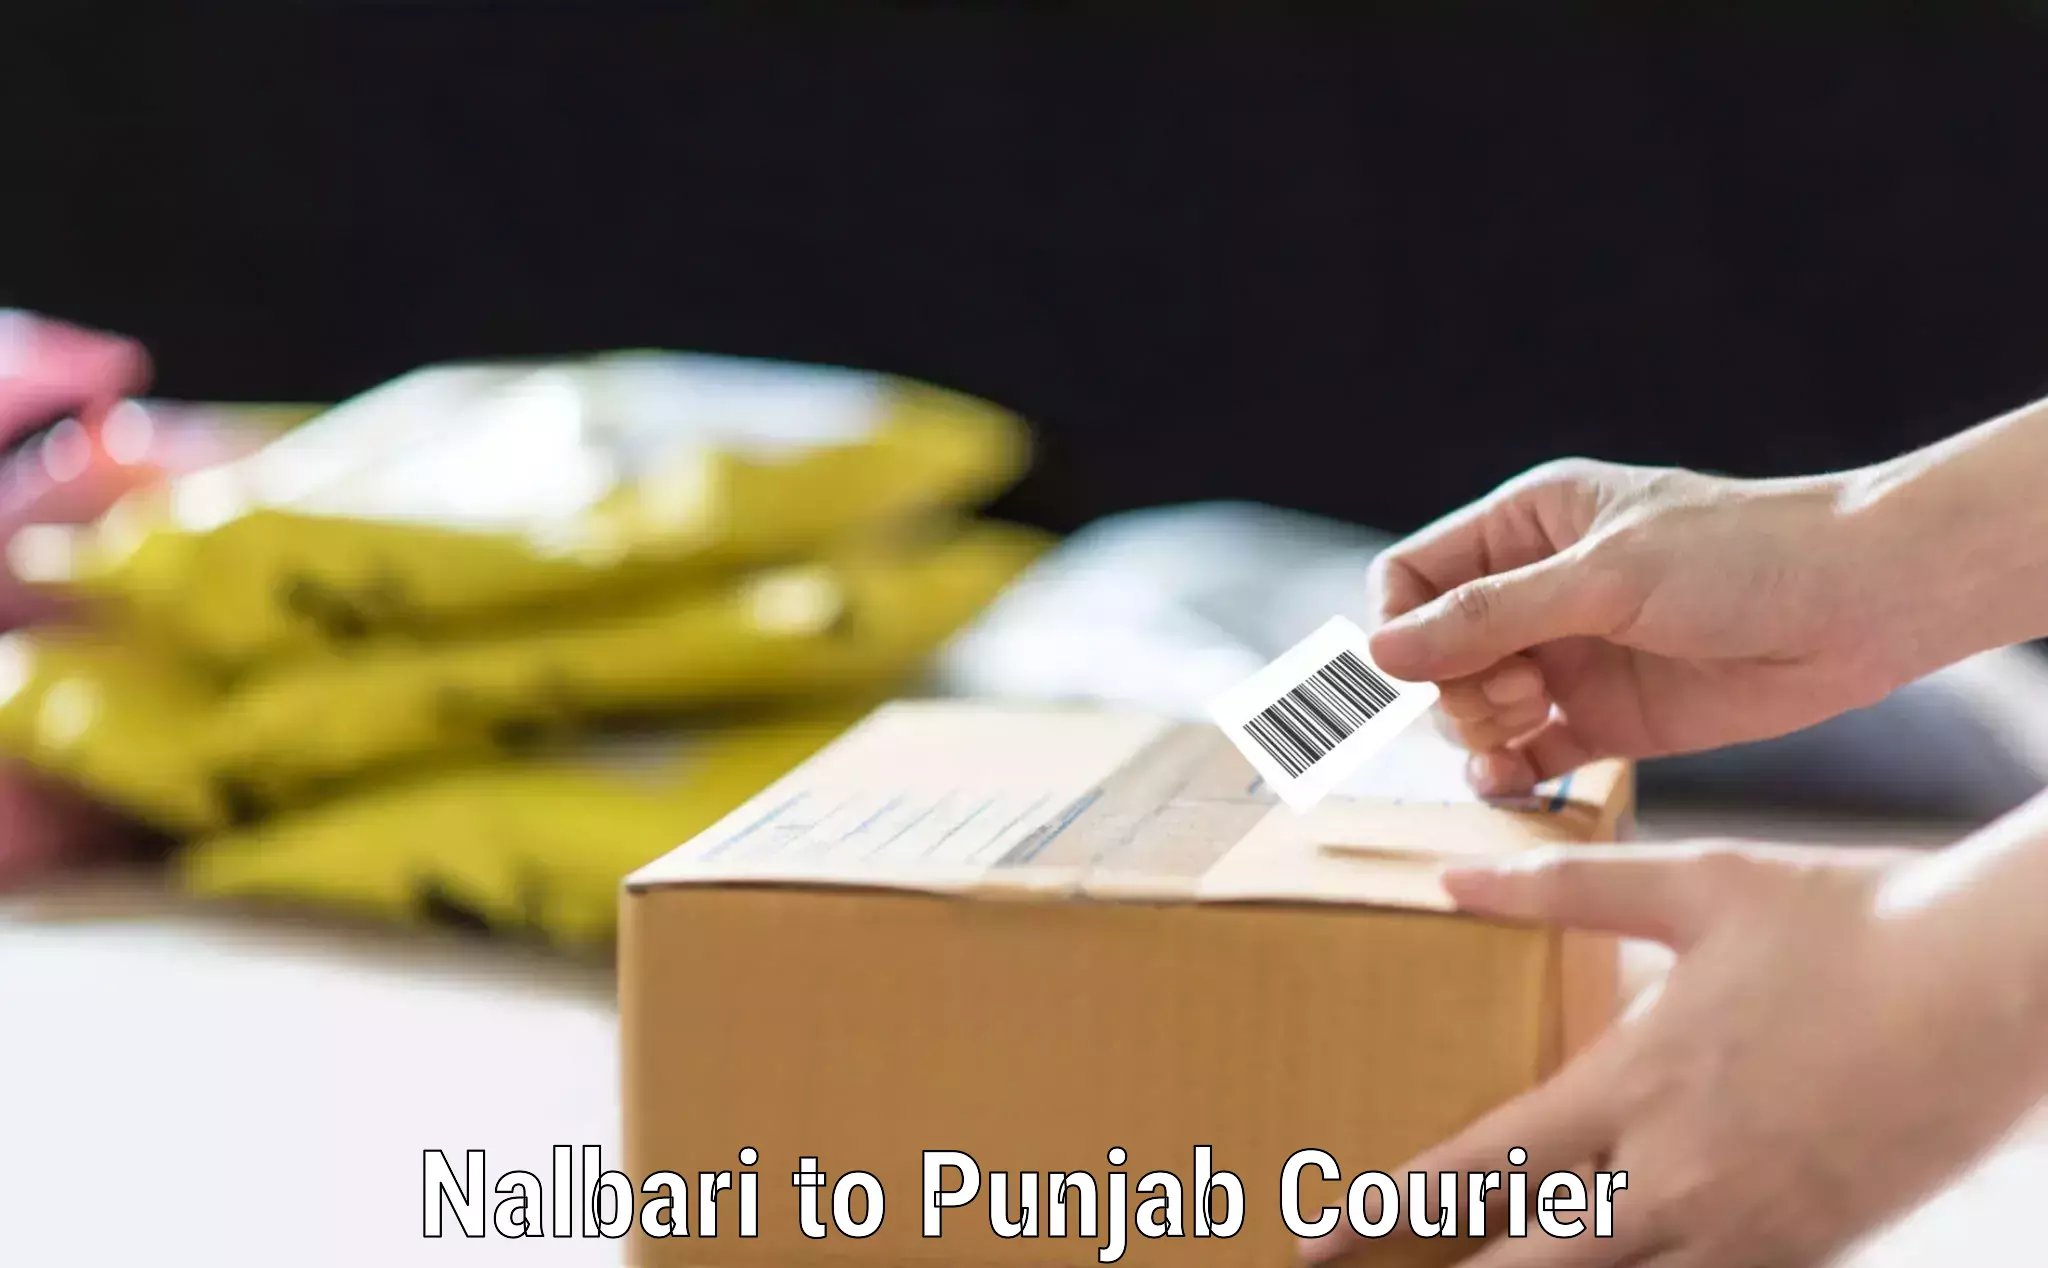 Baggage shipping schedule Nalbari to Punjab